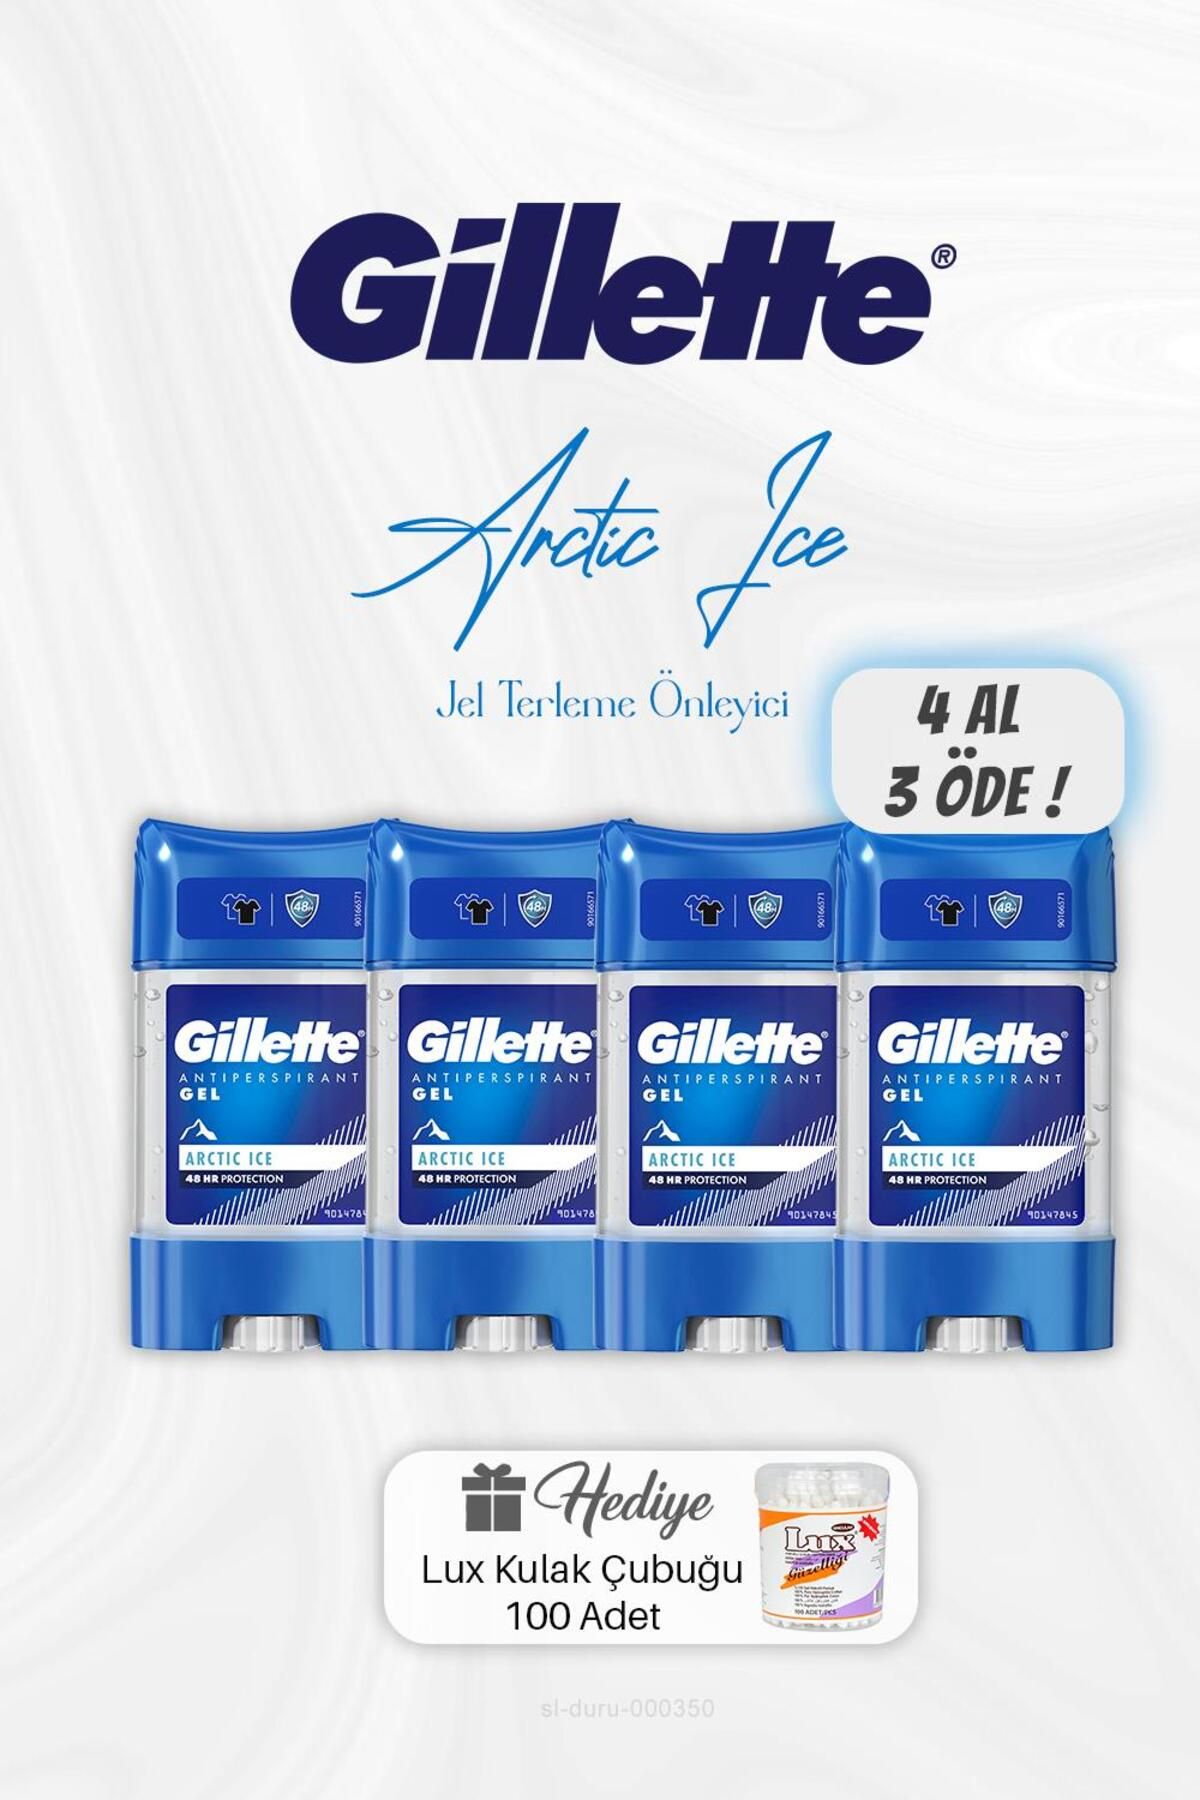 Gillette 4 AL 3 ÖDE Gillette Jel Terleme Önleyici 70 ml, Kulak Çubuğu Hediyeli